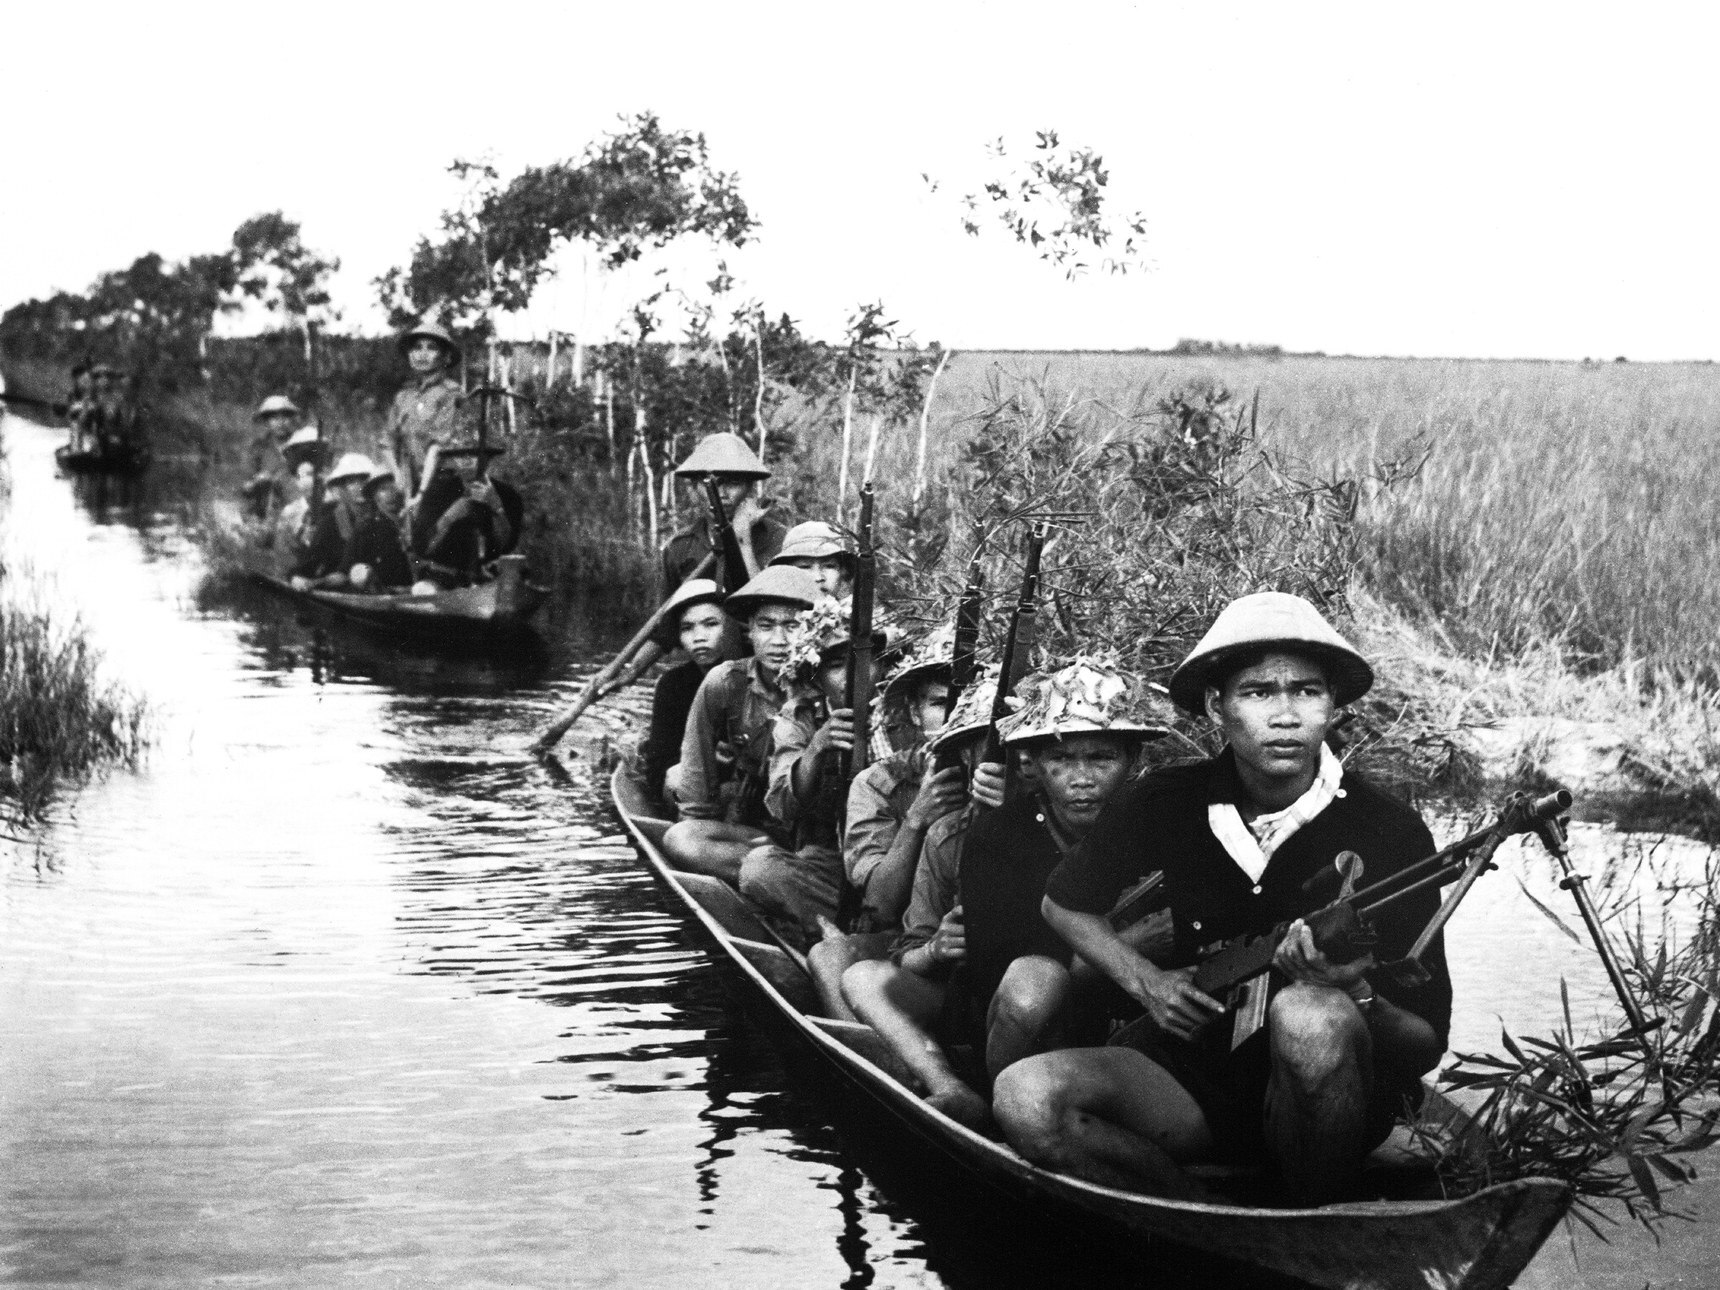 Garry's Mod NPCS] Sino-Vietnamese War: Battle of Ha Long : r/twrmod